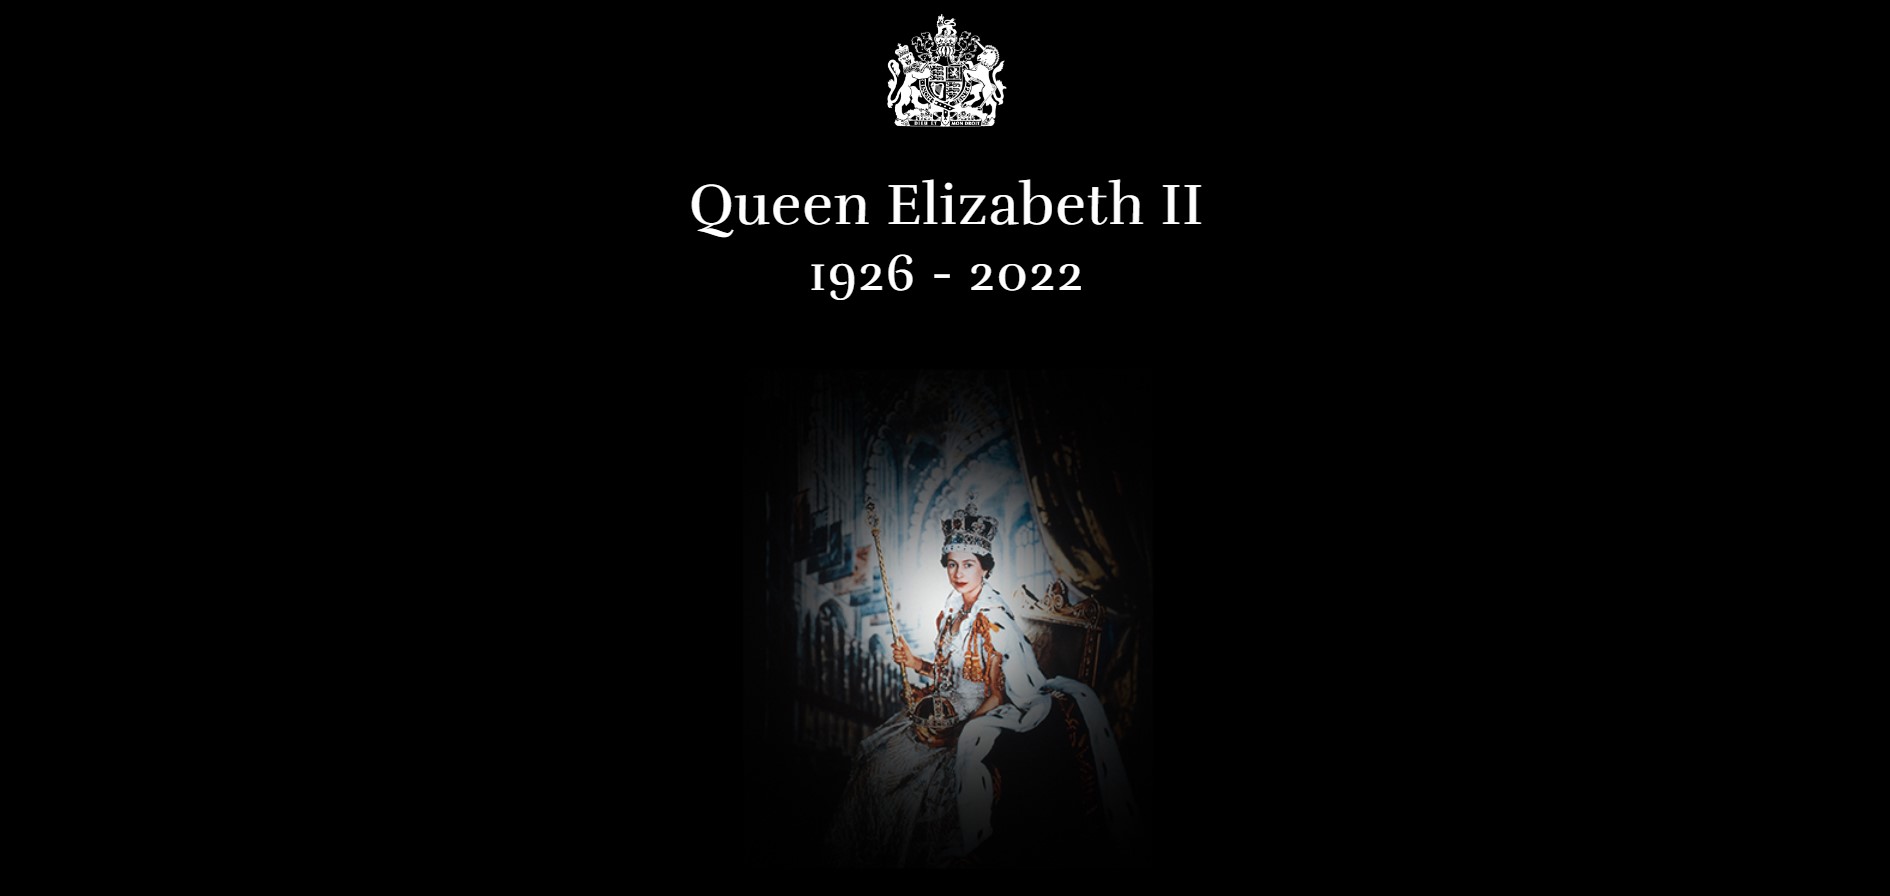 Protocolo 2.0.: Cómo ha sido el comportamiento en redes sociales de la Familia Real tras la muerte de Isabel II